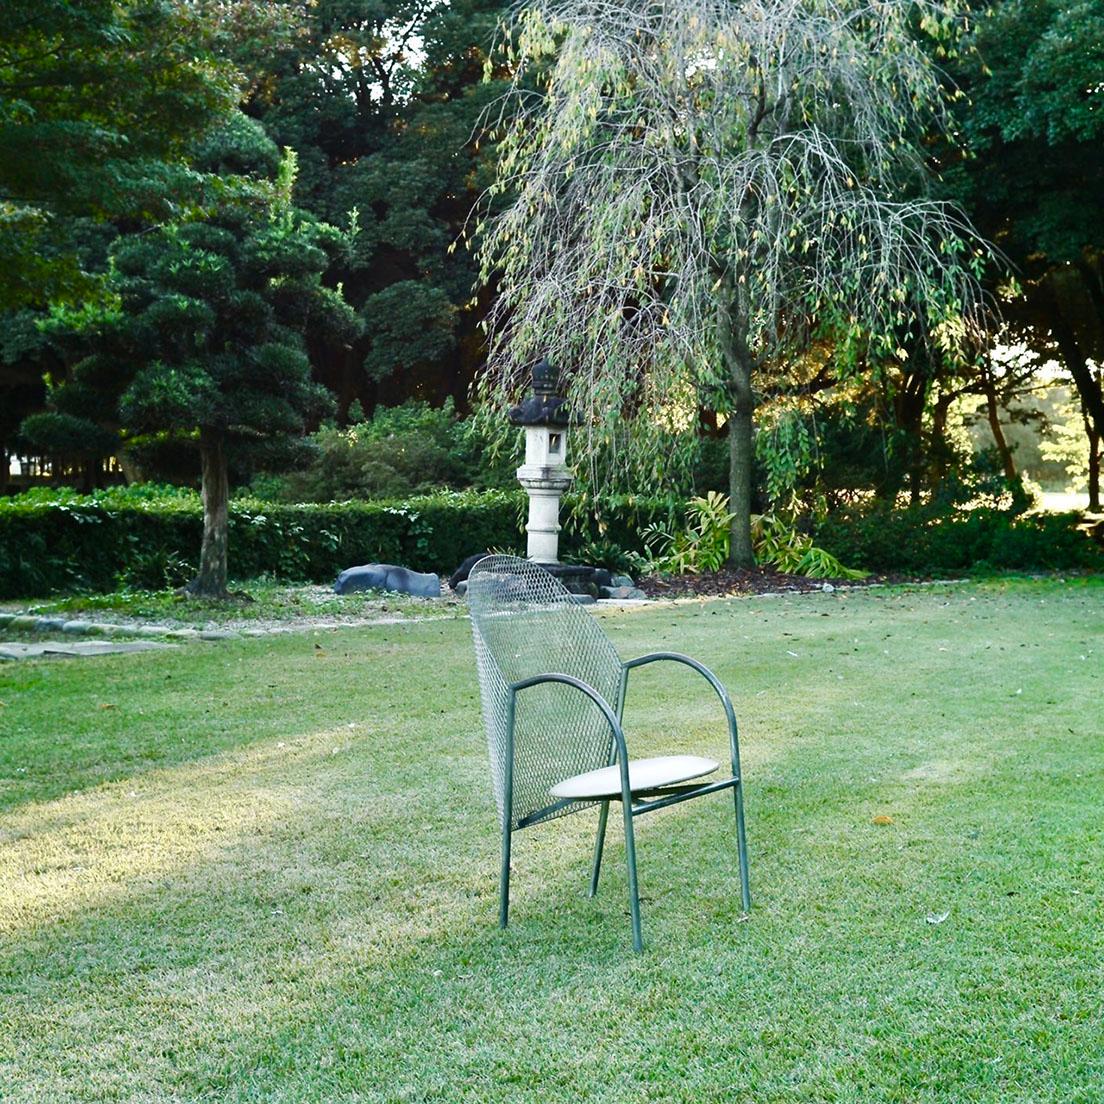 館林市にある名建築〈旧秋元別邸〉の庭に置かれた倉俣史朗の《ハル チェア》。